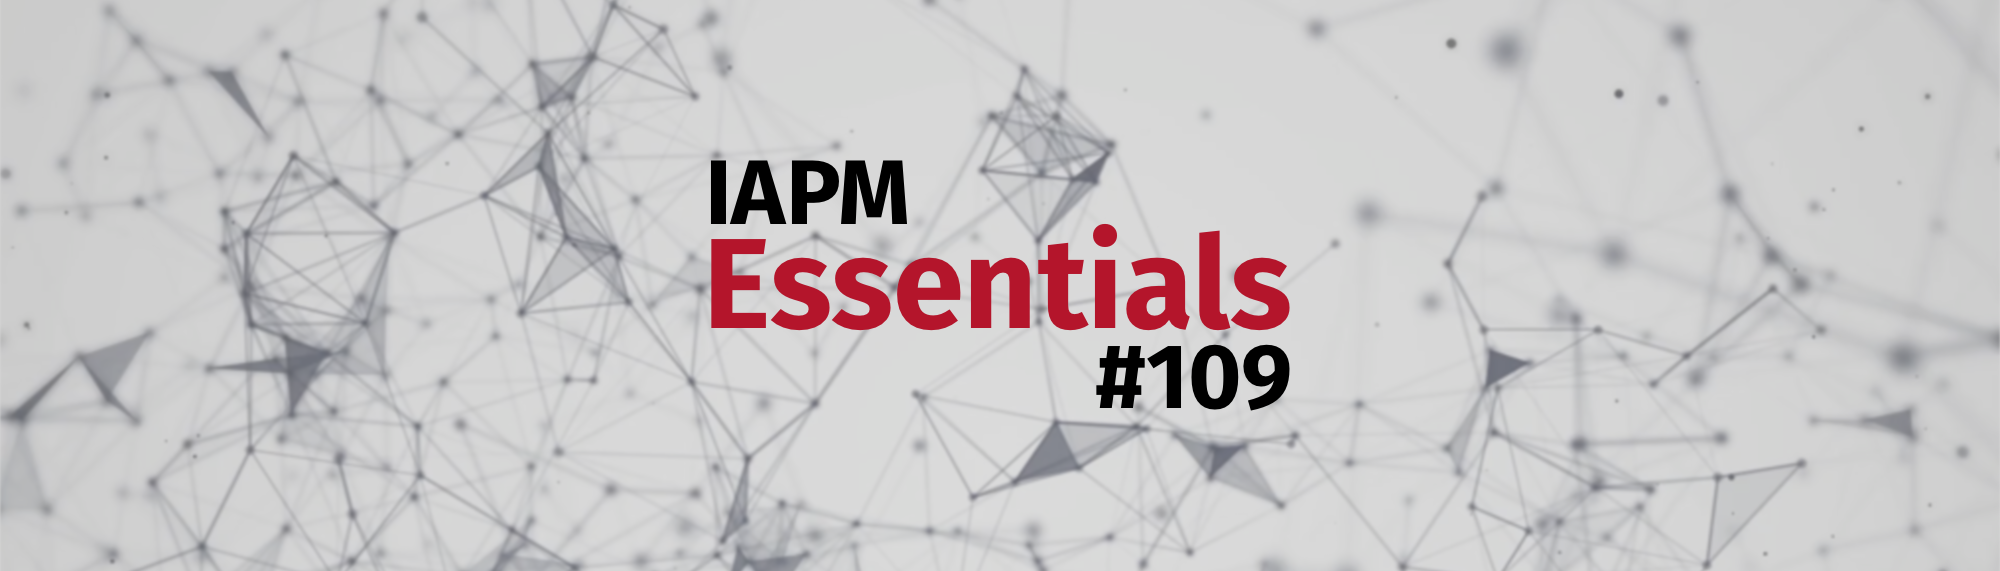 IAPM Essentials #109 - PM news | IAPM